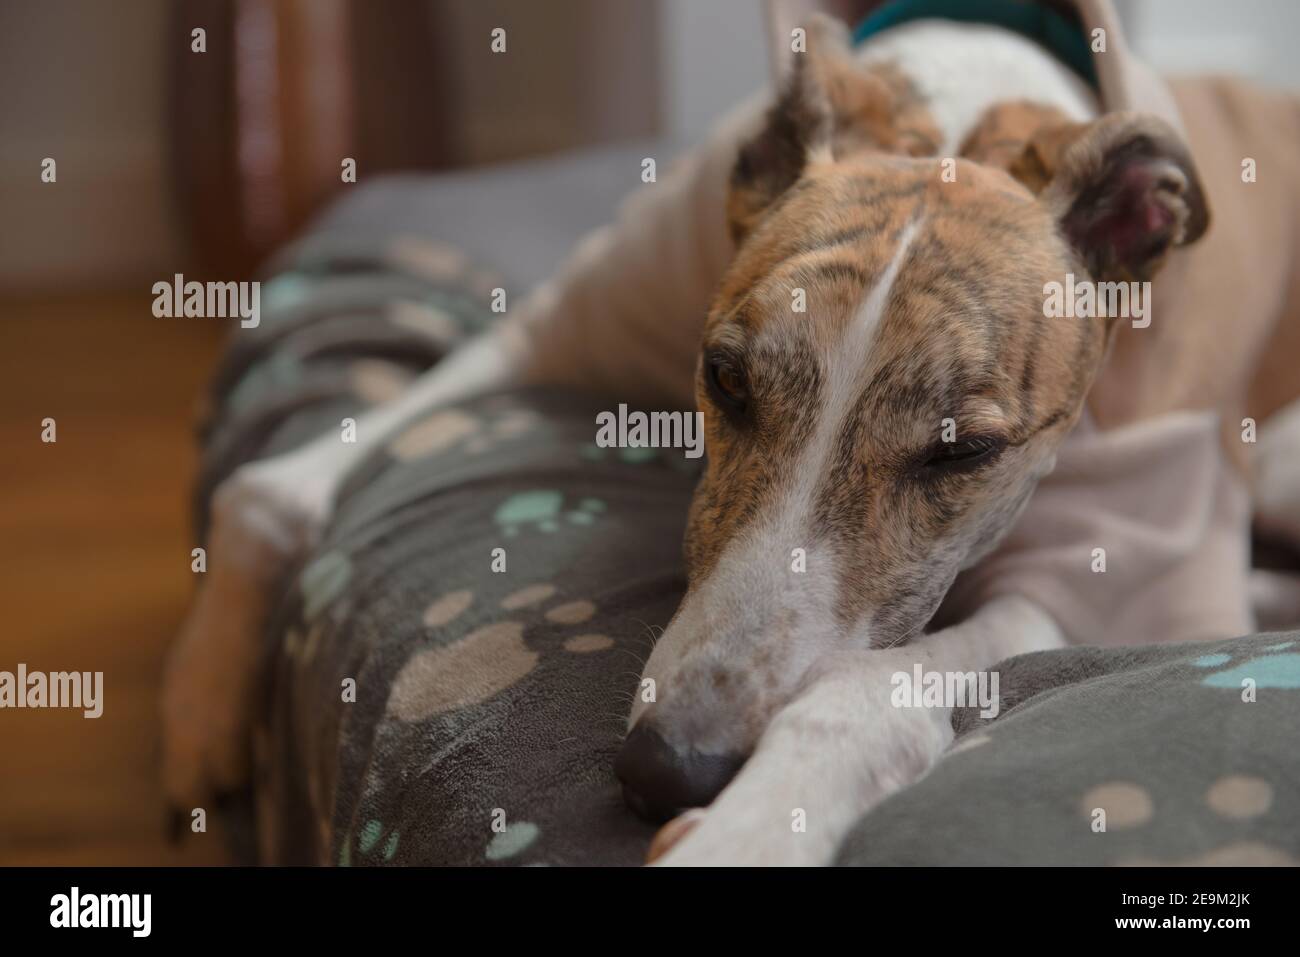 Hund im Schlafanzug sieht in diesem Nahaufnahme Porträt satt. Symmetrische brindle und weißen Pelz Färbung, mit einem Gesamt blau, orange und braun Thema Stockfoto